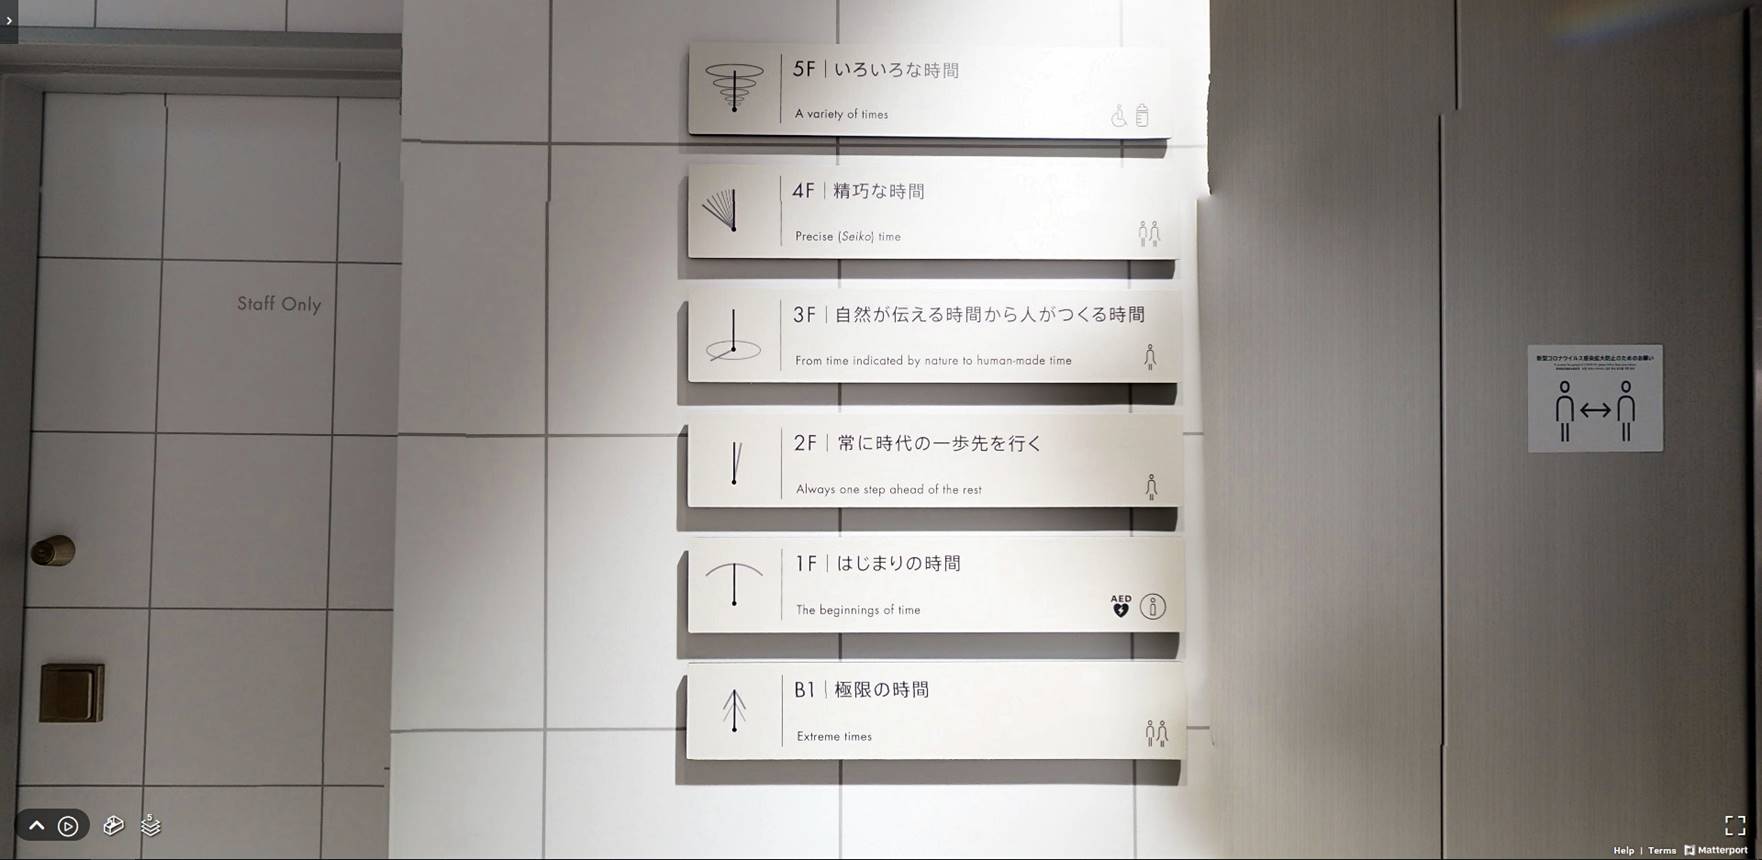 Nowe Muzeum Seiko Ginza – odwiedź już dziś (wirtualnie!)